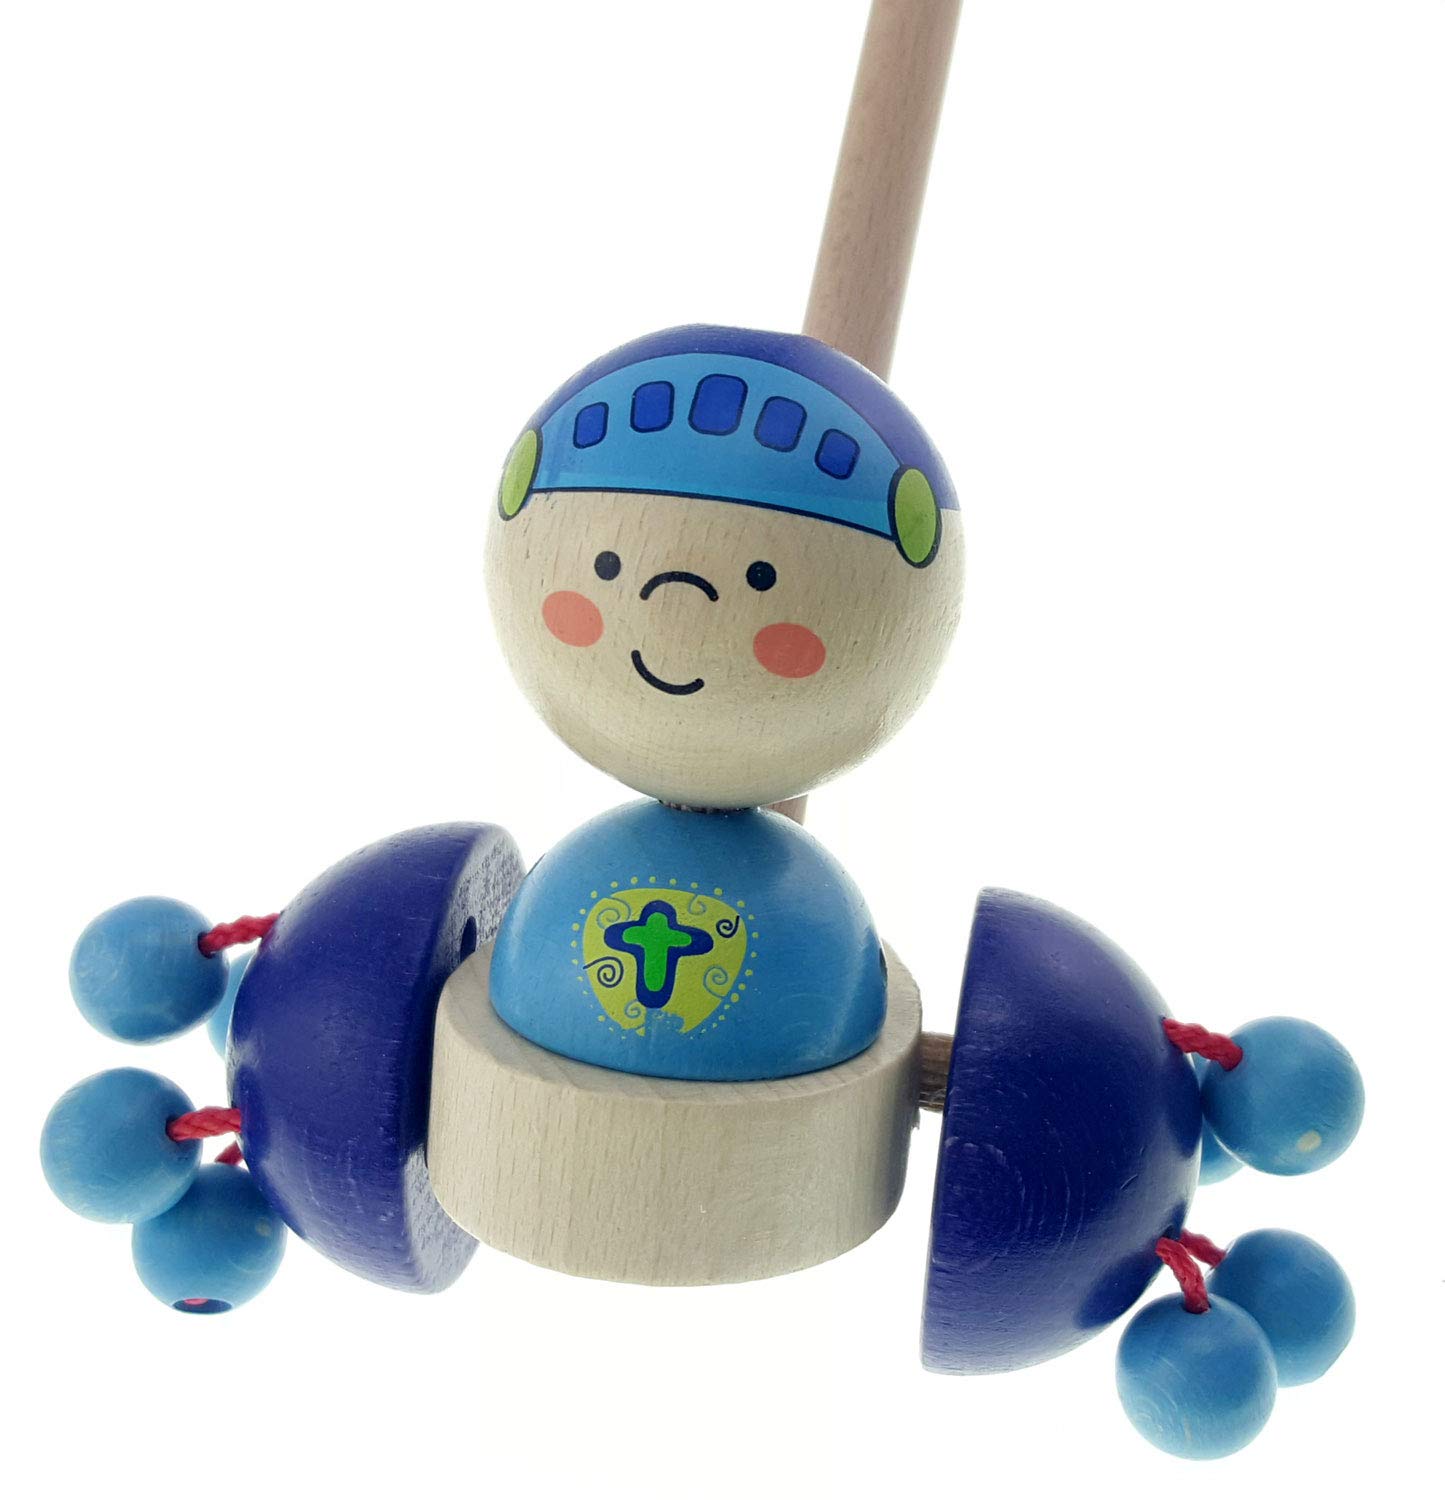 Hess Holzspielzeug 14456 - Schiebefigur aus Holz, blauer Ritter, ca. 13 x 15 x 60 cm, kindgerechtes Spielzeug zum Schieben und Ziehen für Kleinkinder